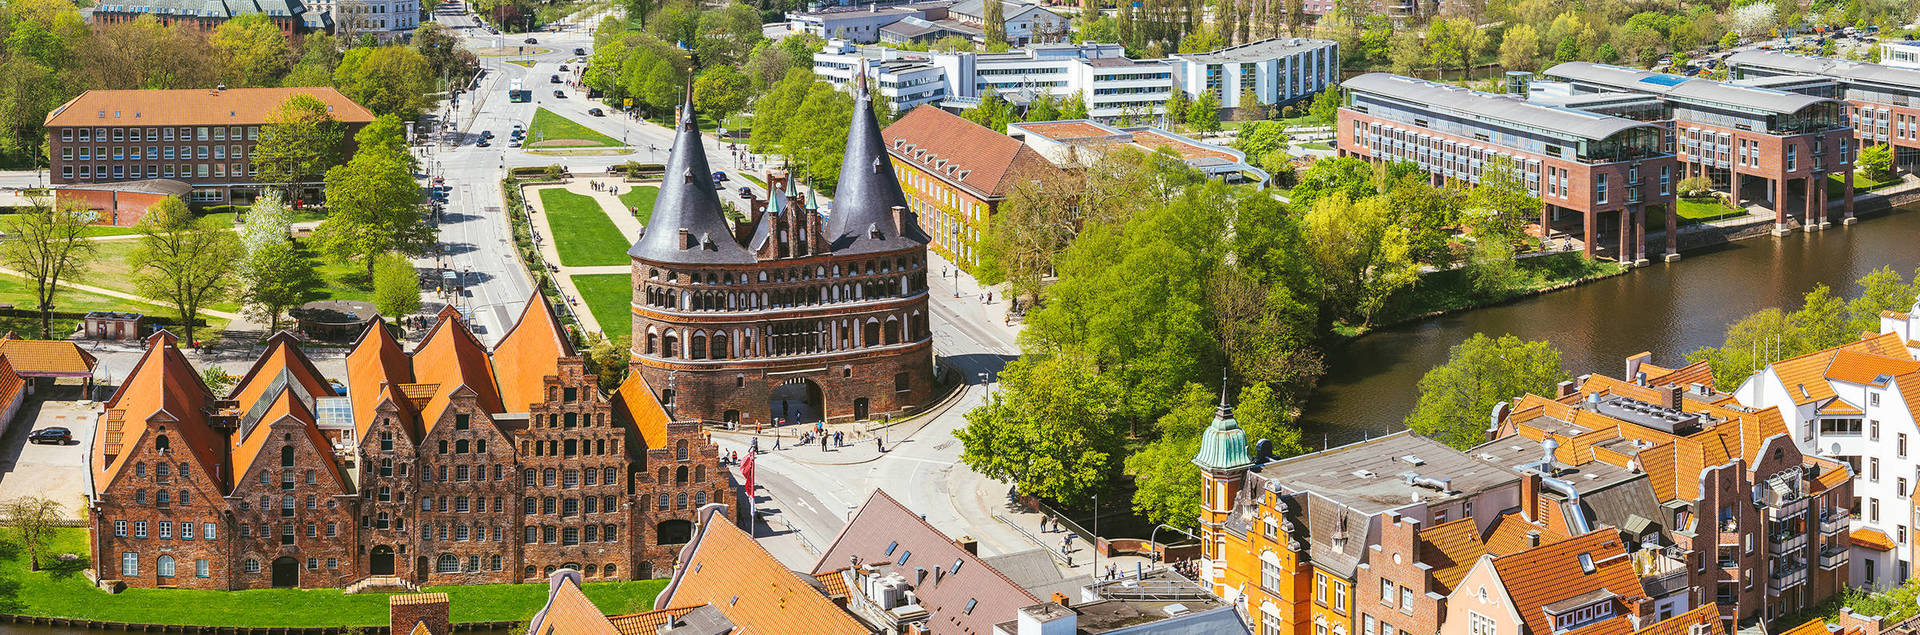 Städtereise nach Lübeck - H+ Hotel Lübeck - Offizielle Webseite